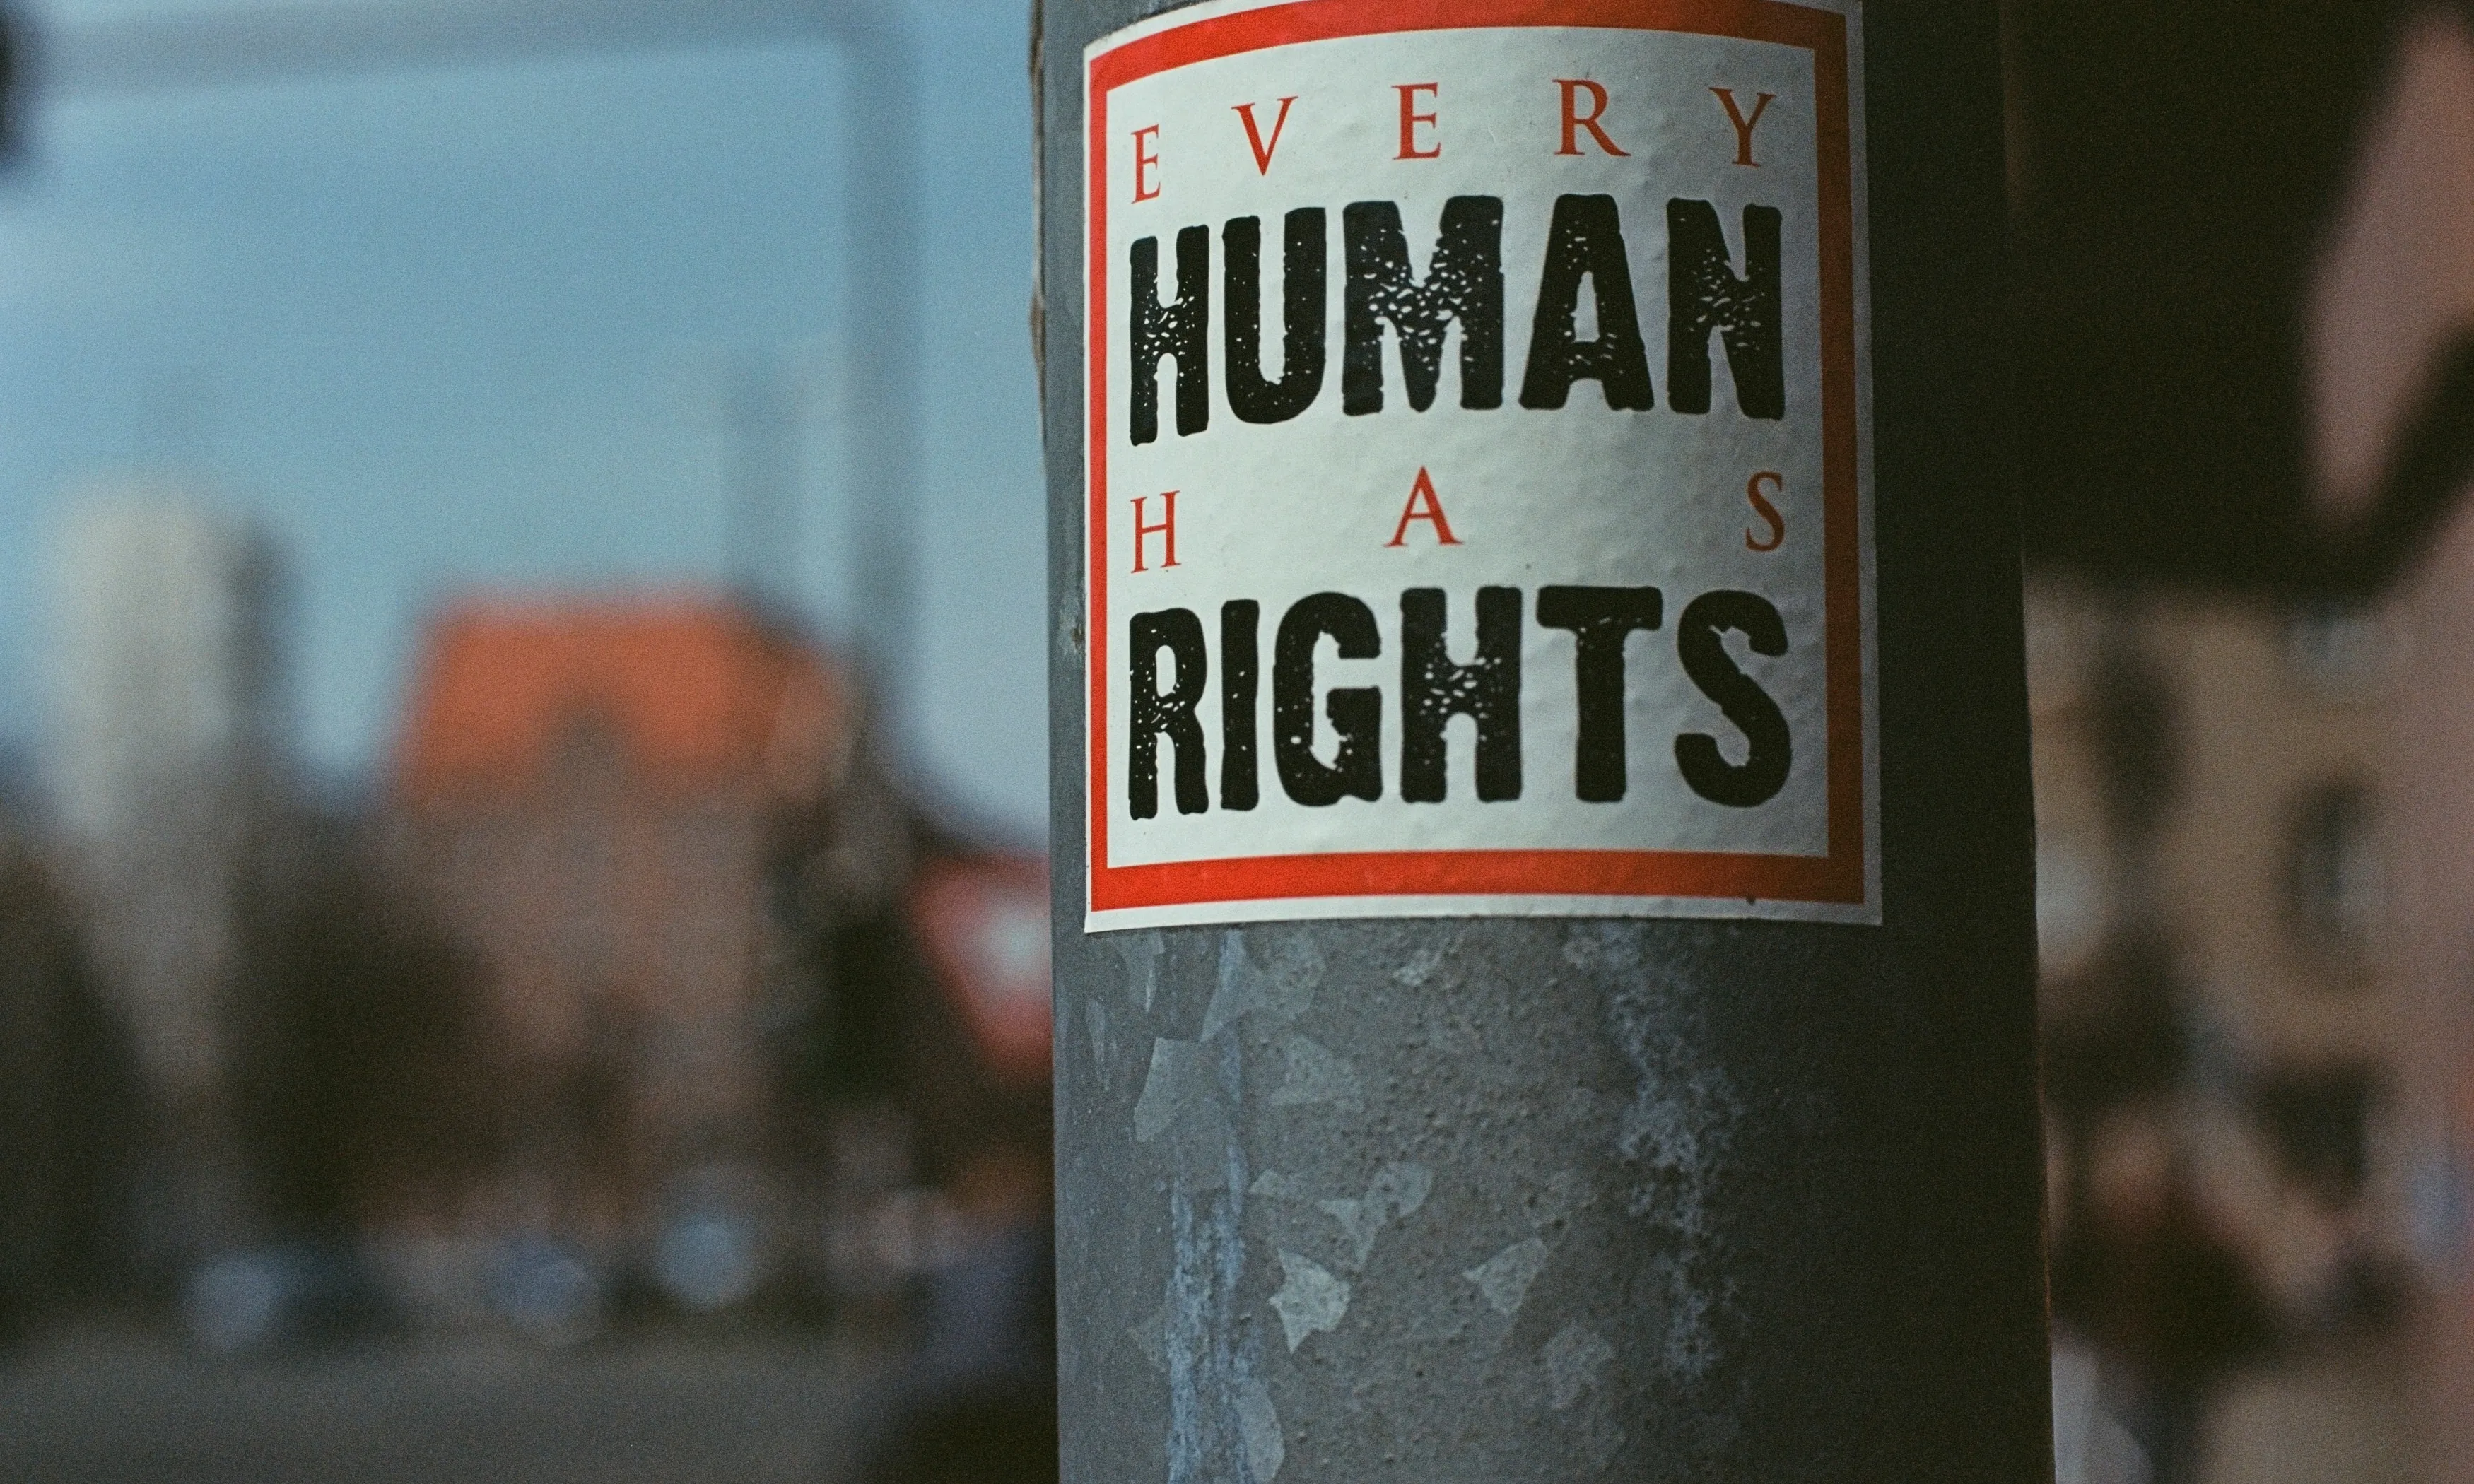 La Declaració Universal dels Drets Humans reconeix que "tots els éssers humans neixen lliures i iguals en dignitat i en drets".